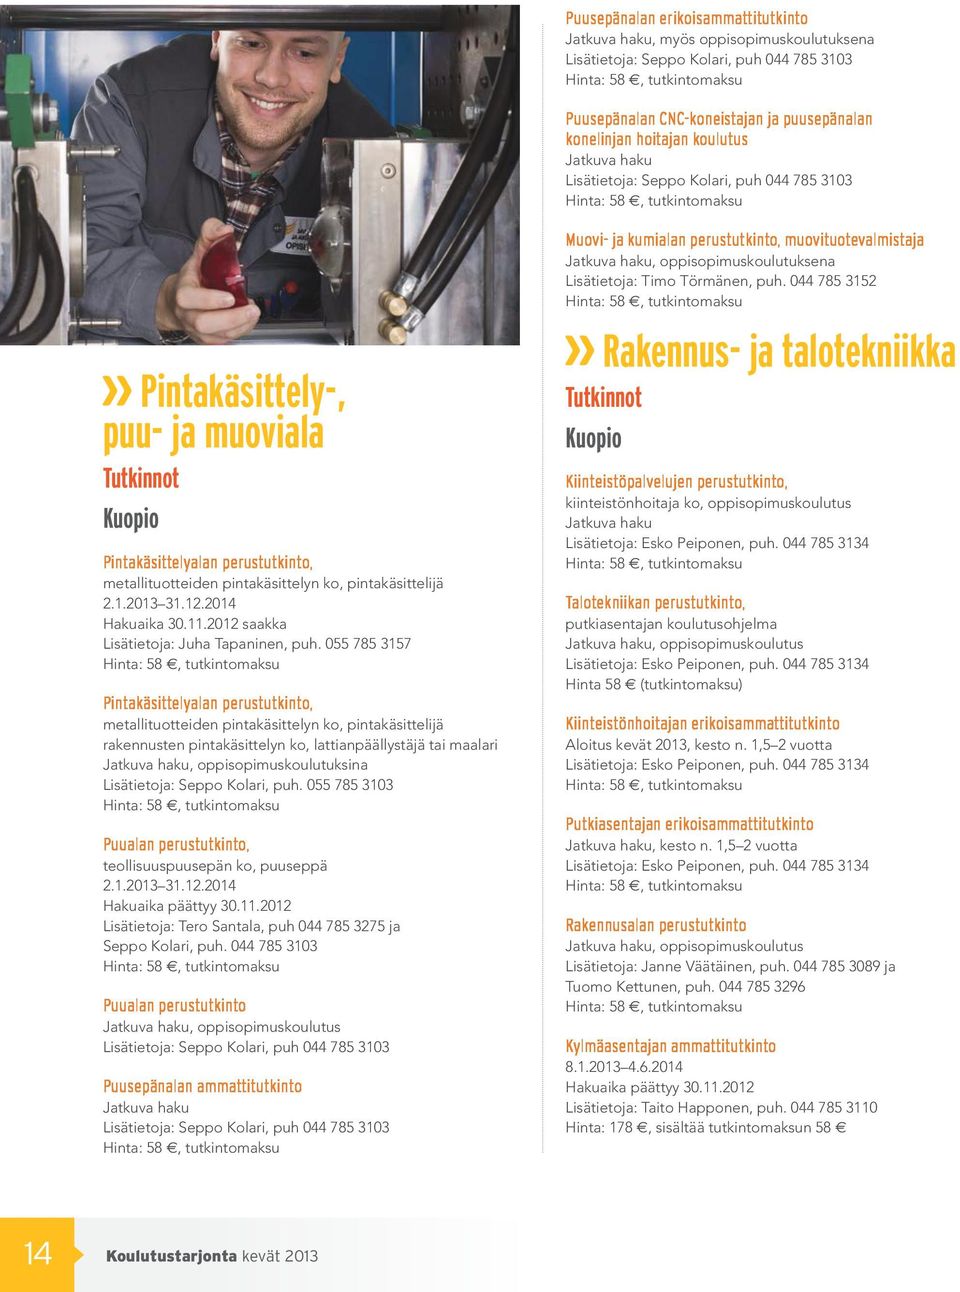 2012 saakka Lisätietoja: Juha Tapaninen, puh.